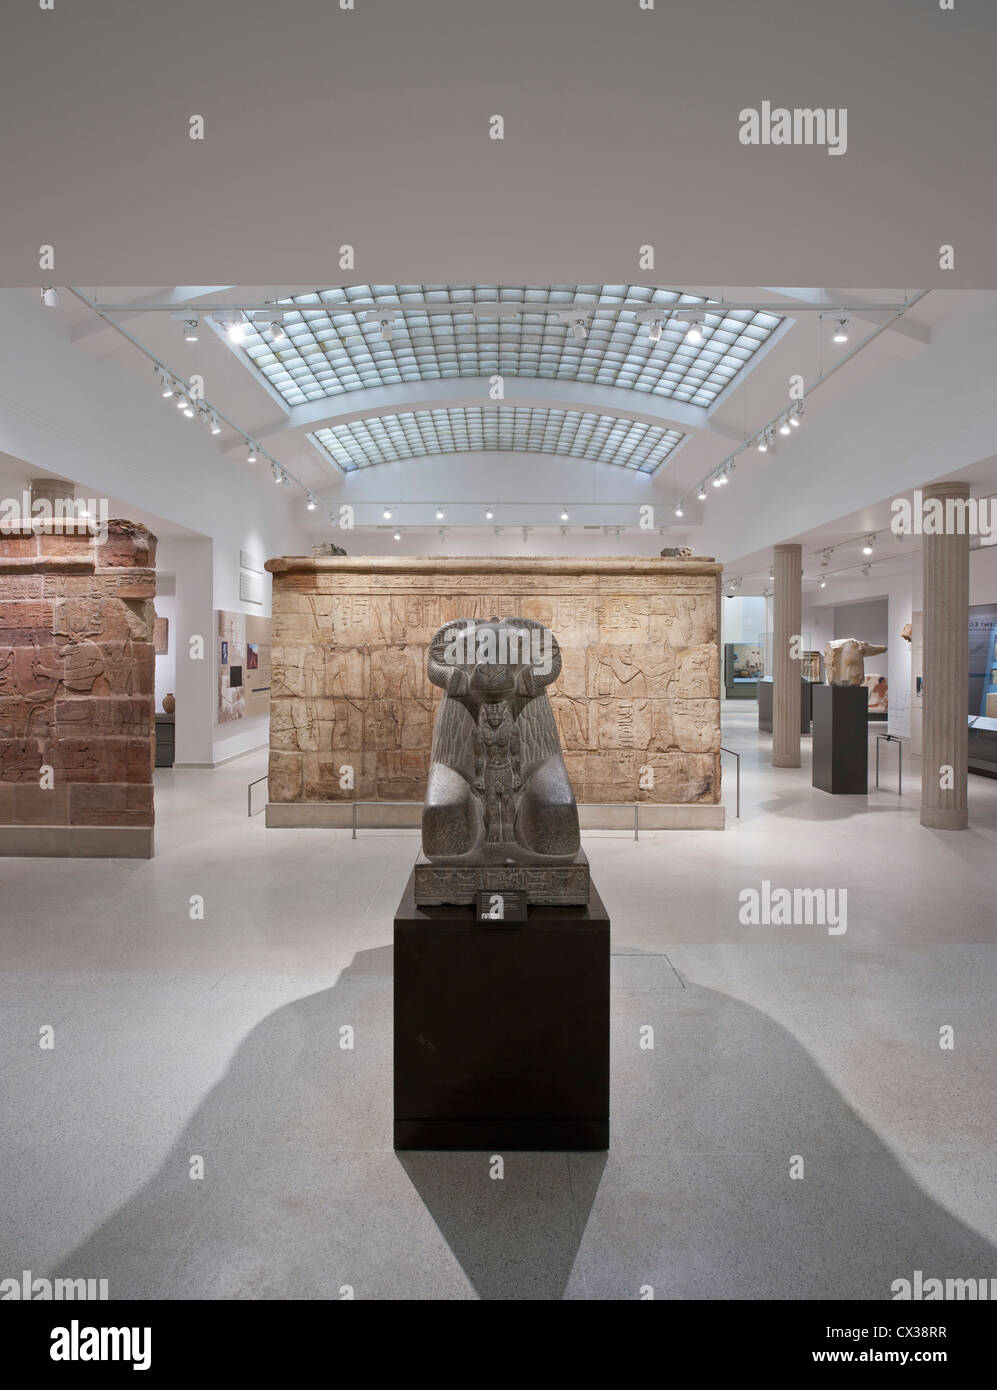 Egitto gallerie, Ashmolean Museum di Oxford, Regno Unito. Architetto: Rick Mather Architects, 2011. Foto Stock